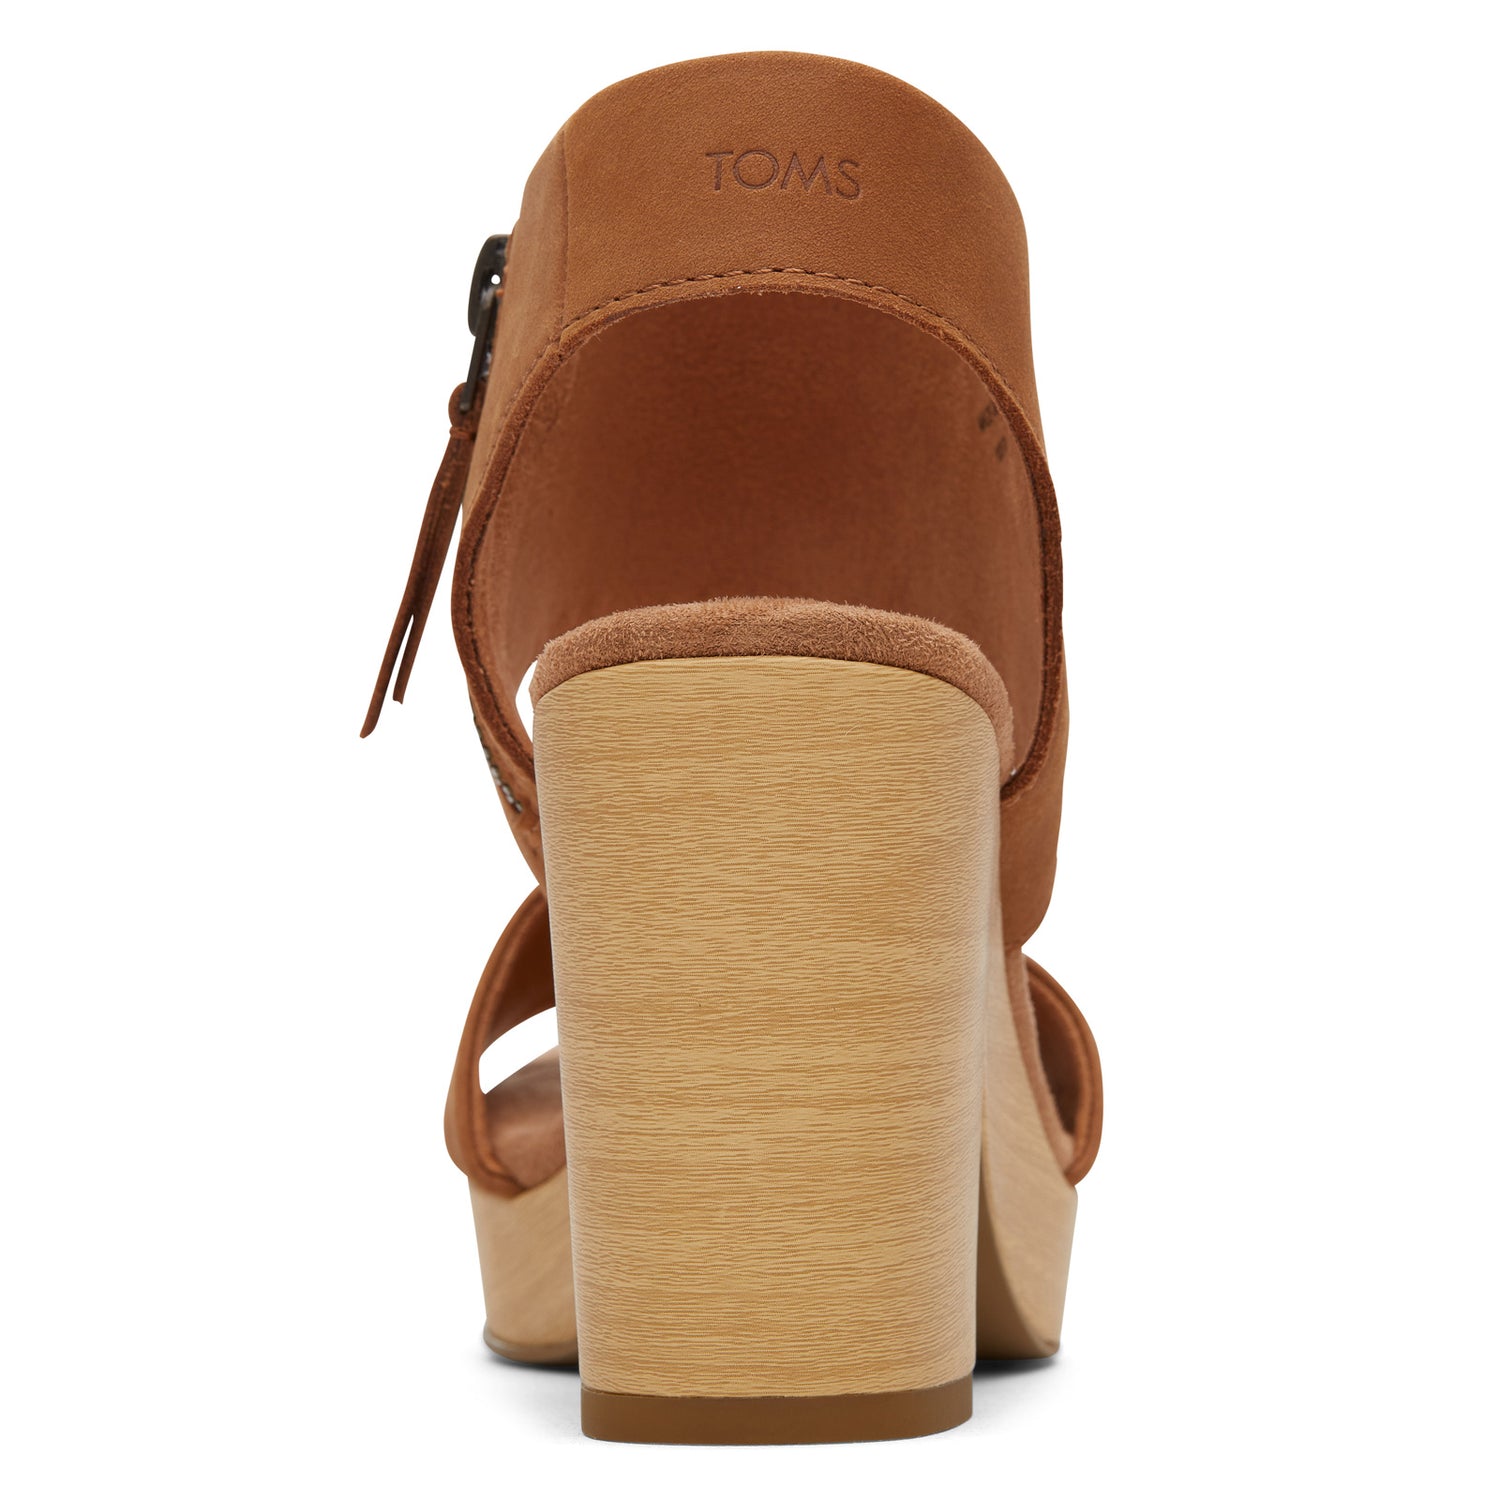 Peltz Shoes  Women's Toms Majorca Platform Sandal TAN LEATHER 10019708